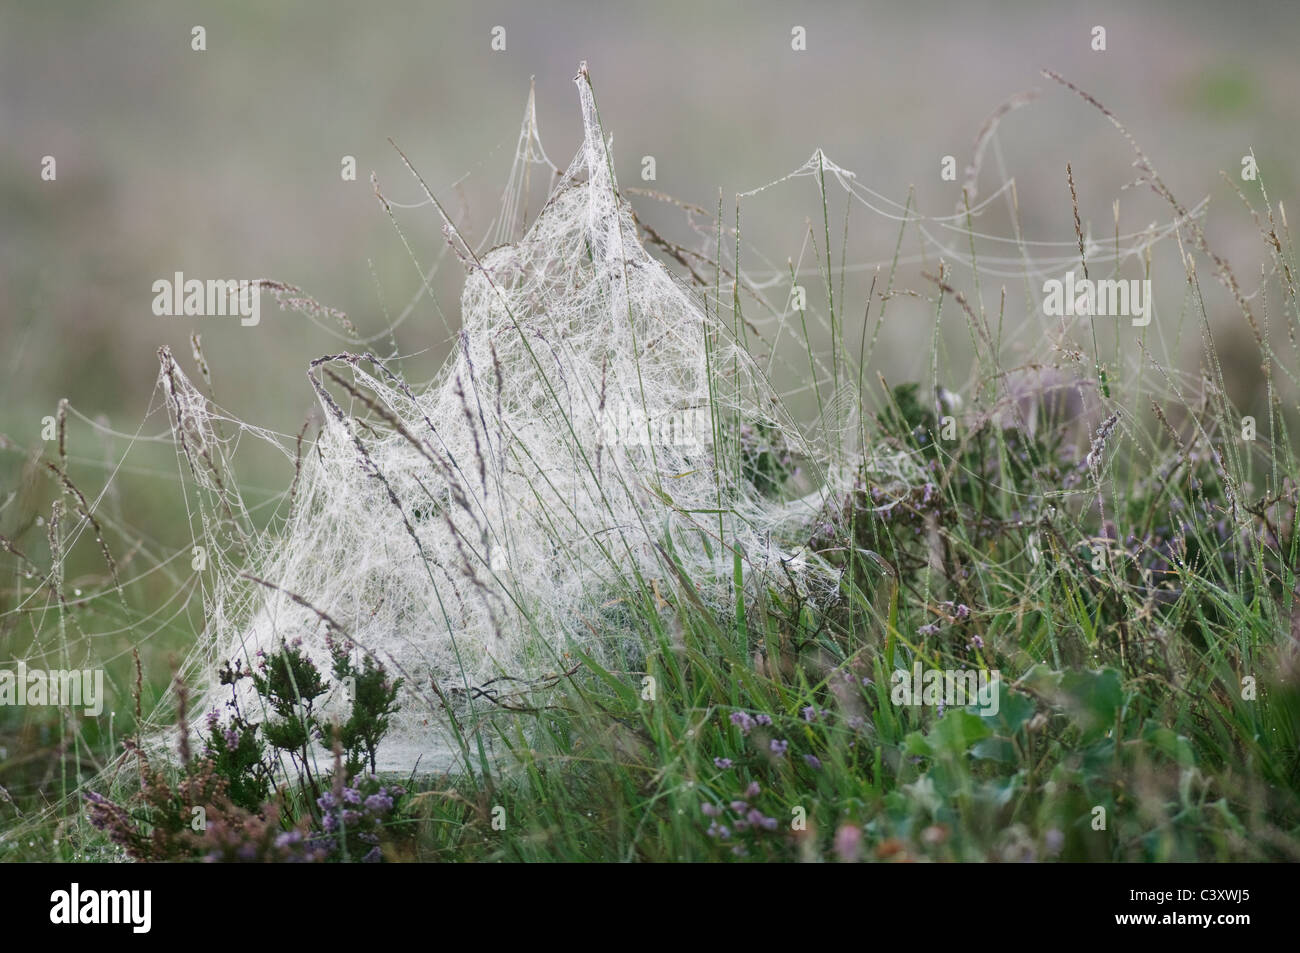 Spinnennetz in Tau auf Heideland, bedeckt, Hothfield Heathlands, Kent, England, August Stockfoto